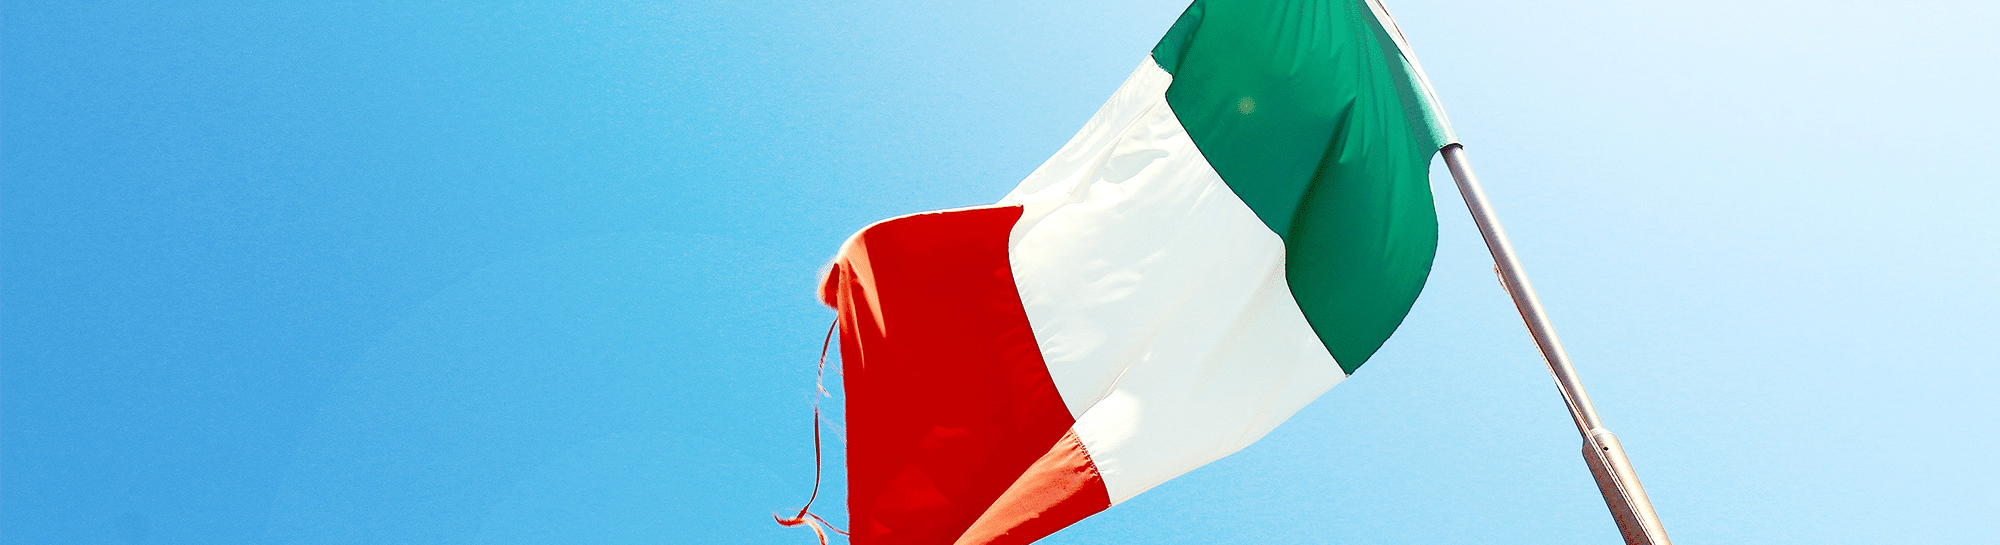 Versand nach Italien: Alle Antworten auf Fragen rund um den Paketversand nach Italien